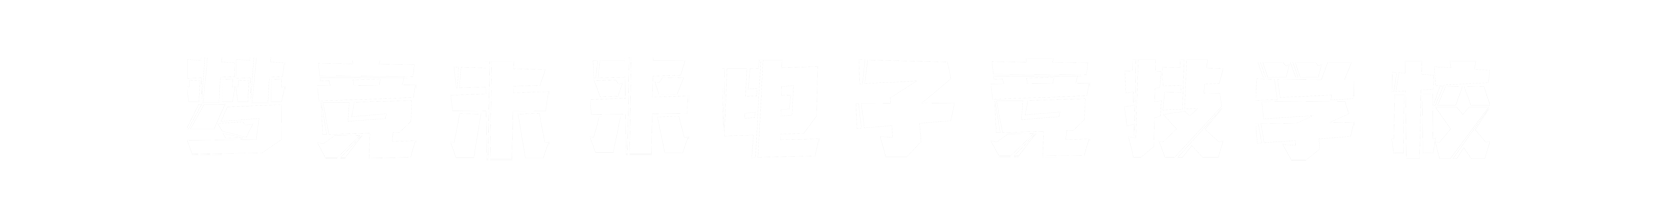 梦竞未来辽宁banner字